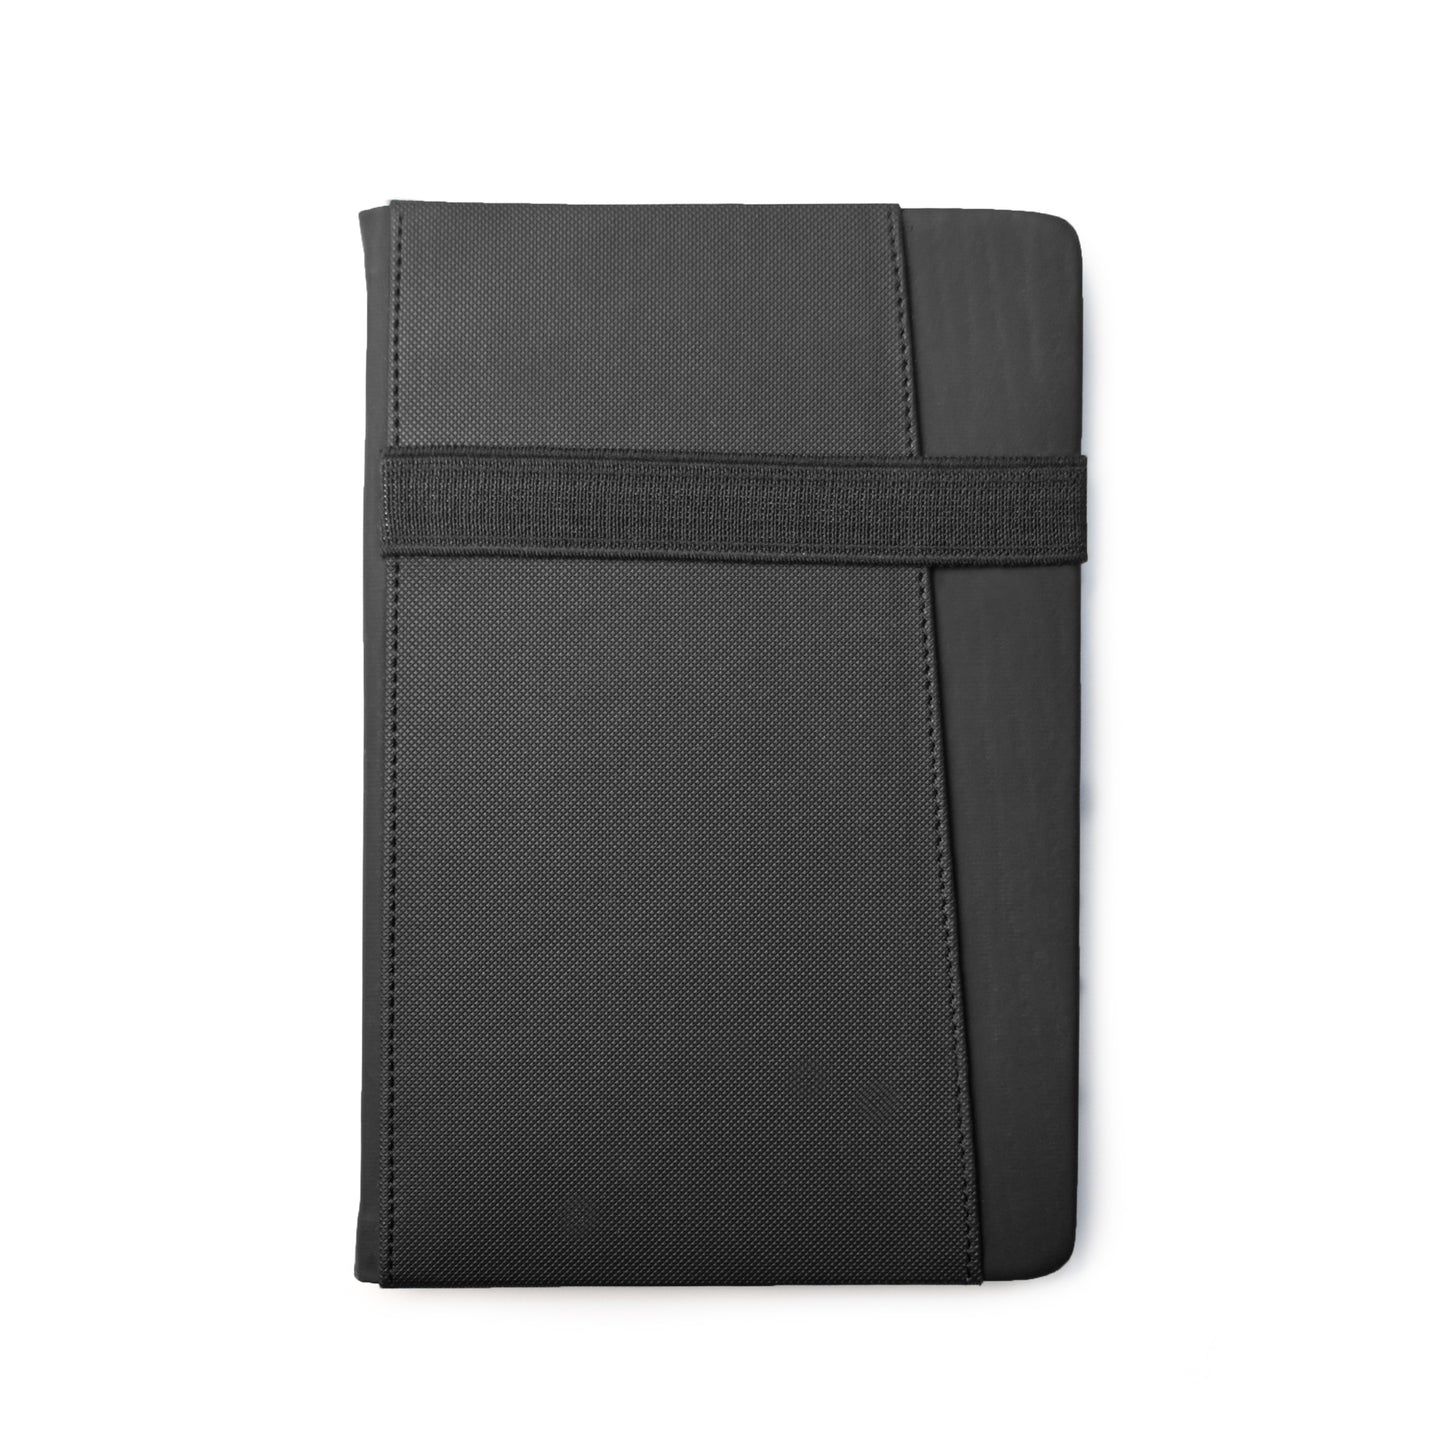 Achiever notebook